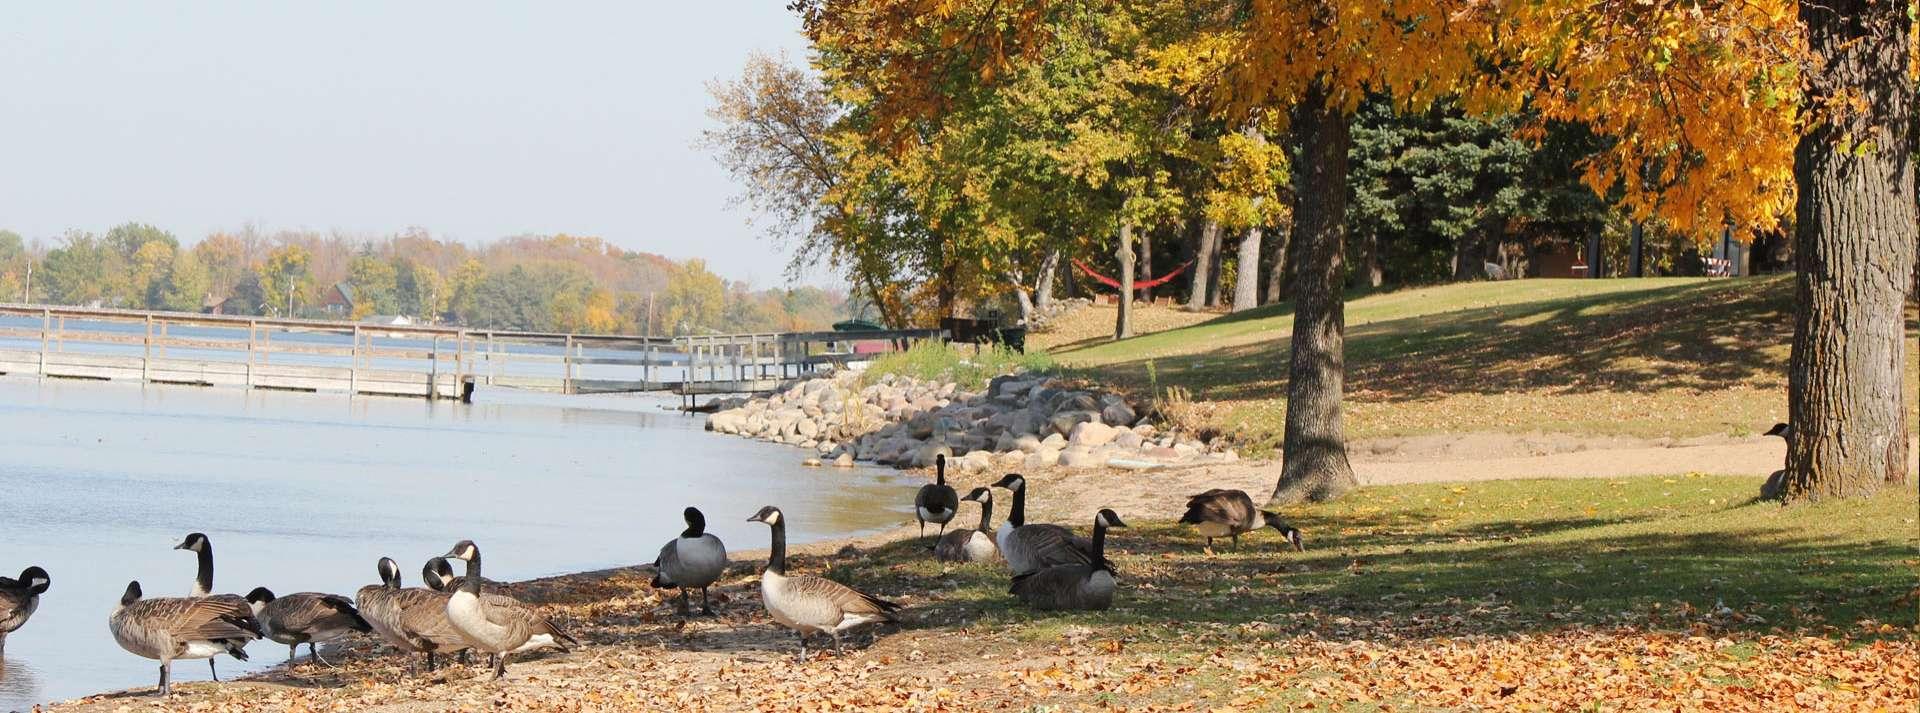 Geese near a pond